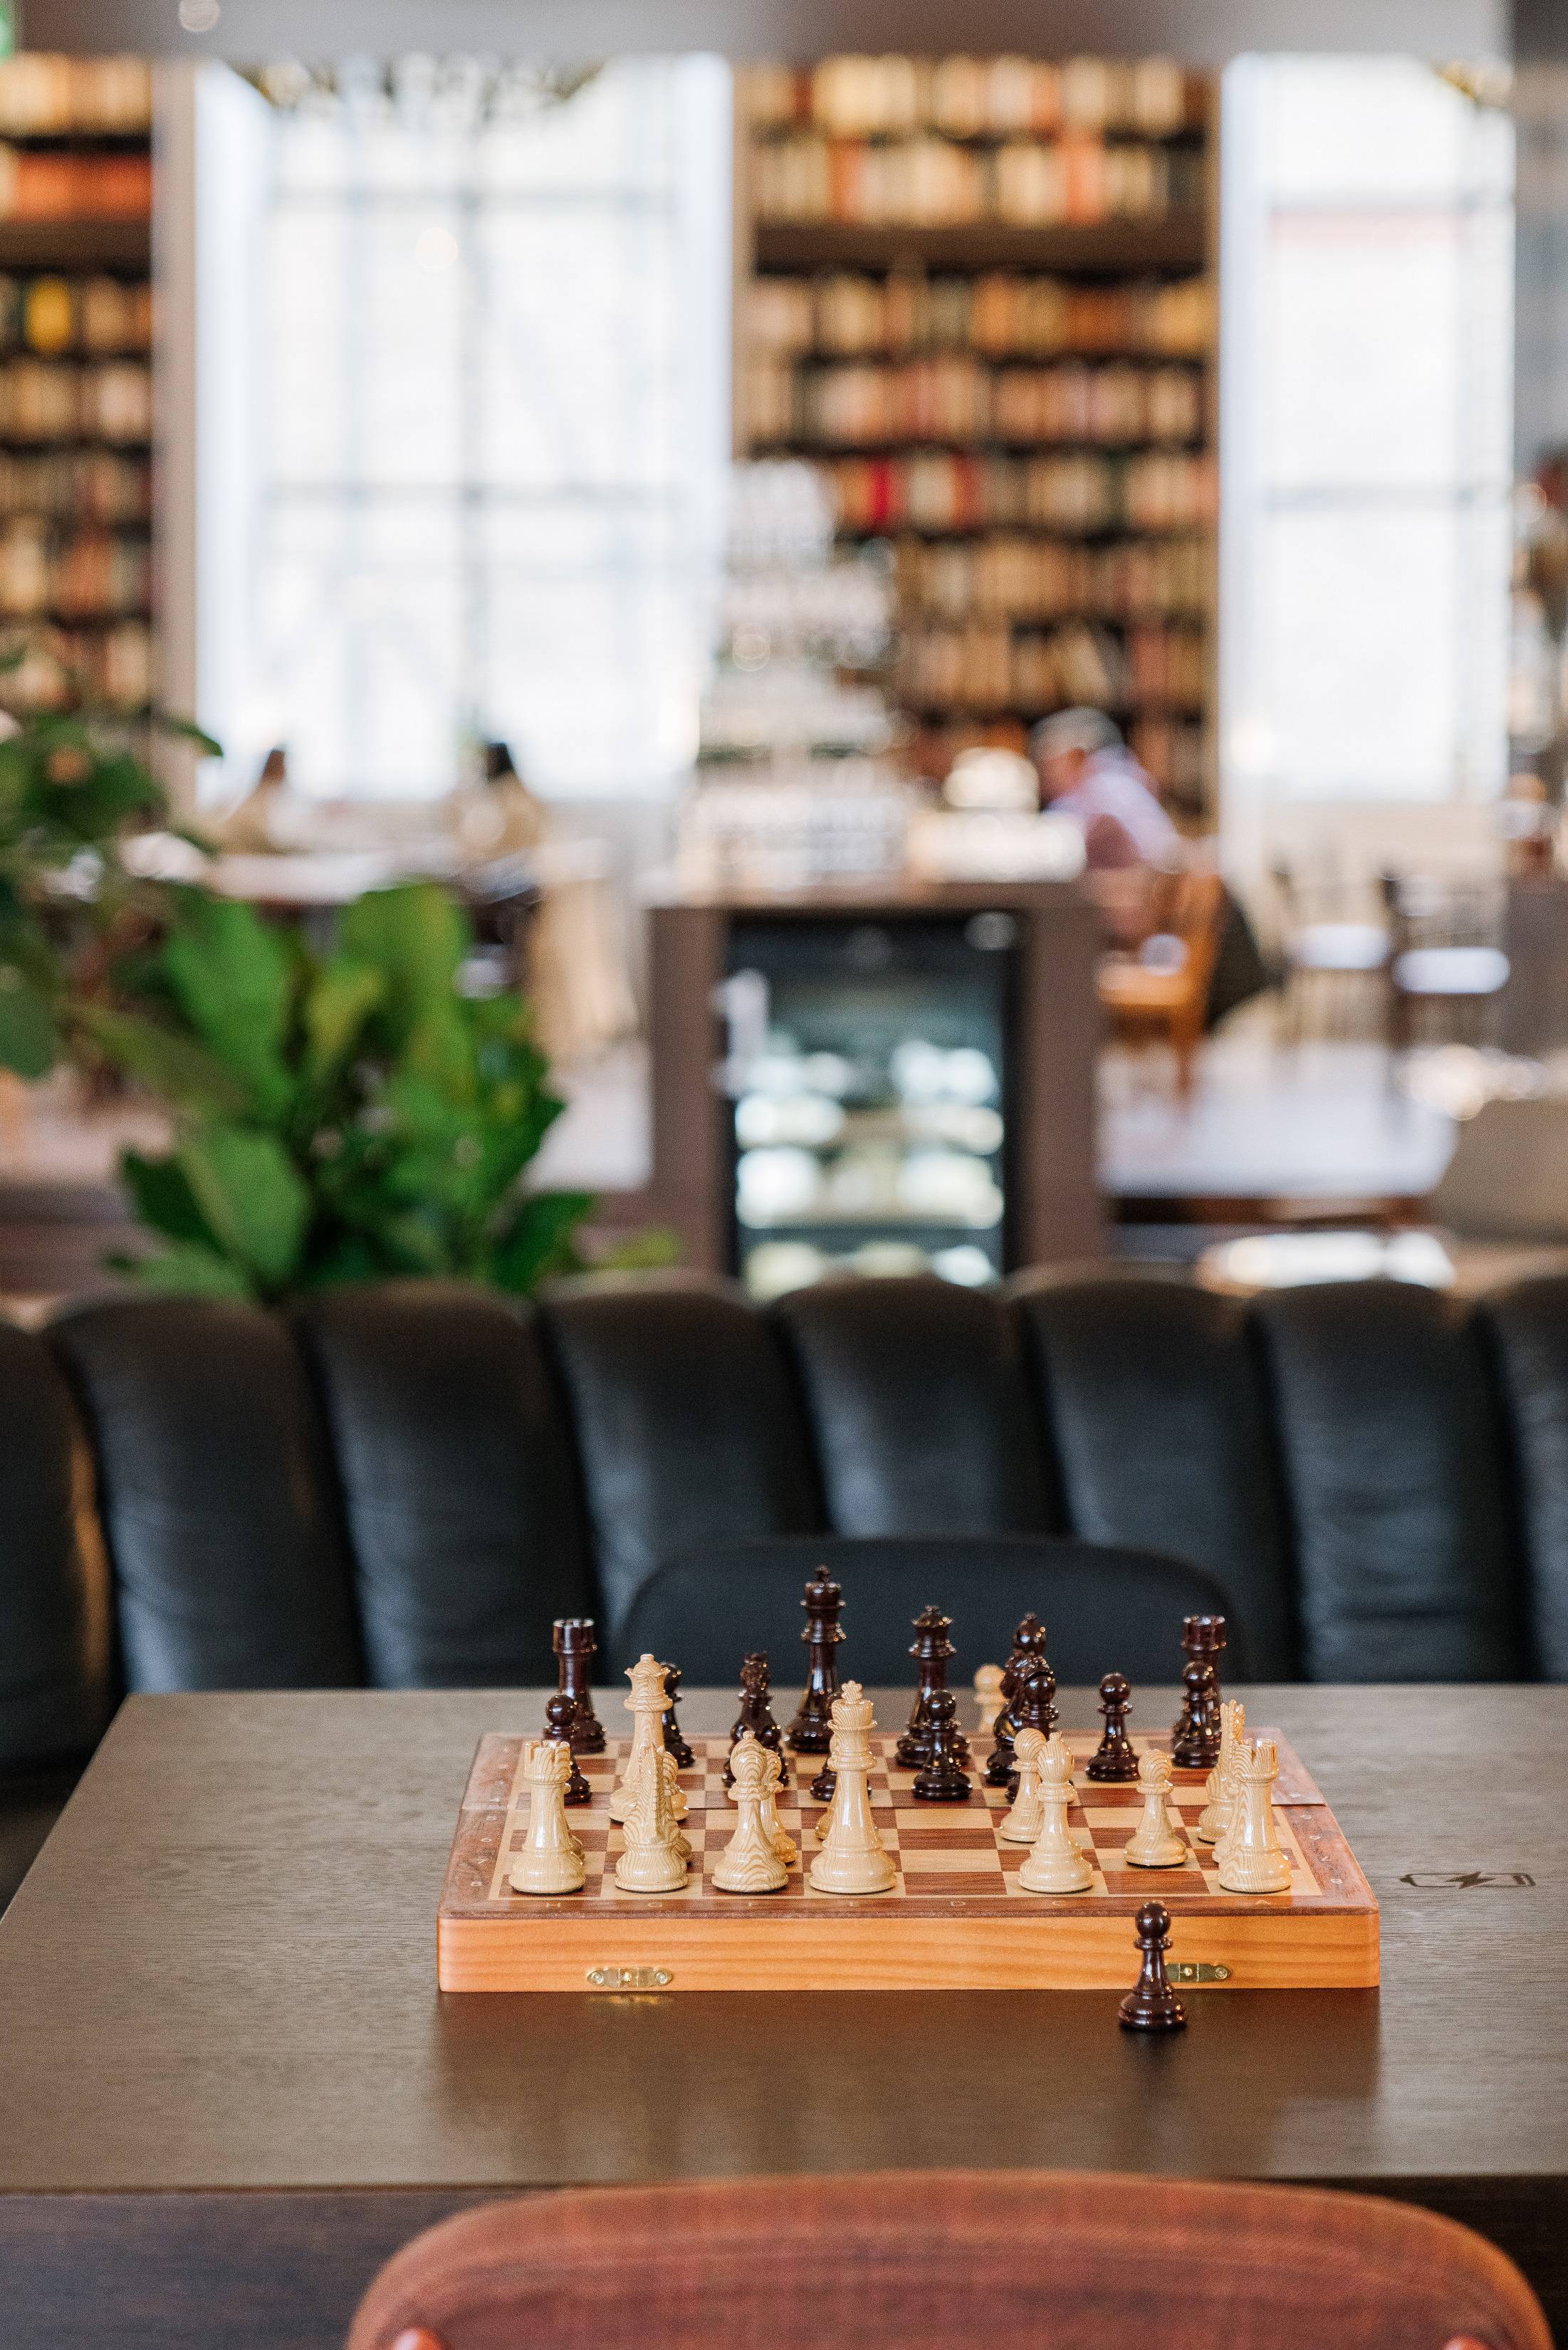 Schachspiel in der Library des B2 Hotel Zürich